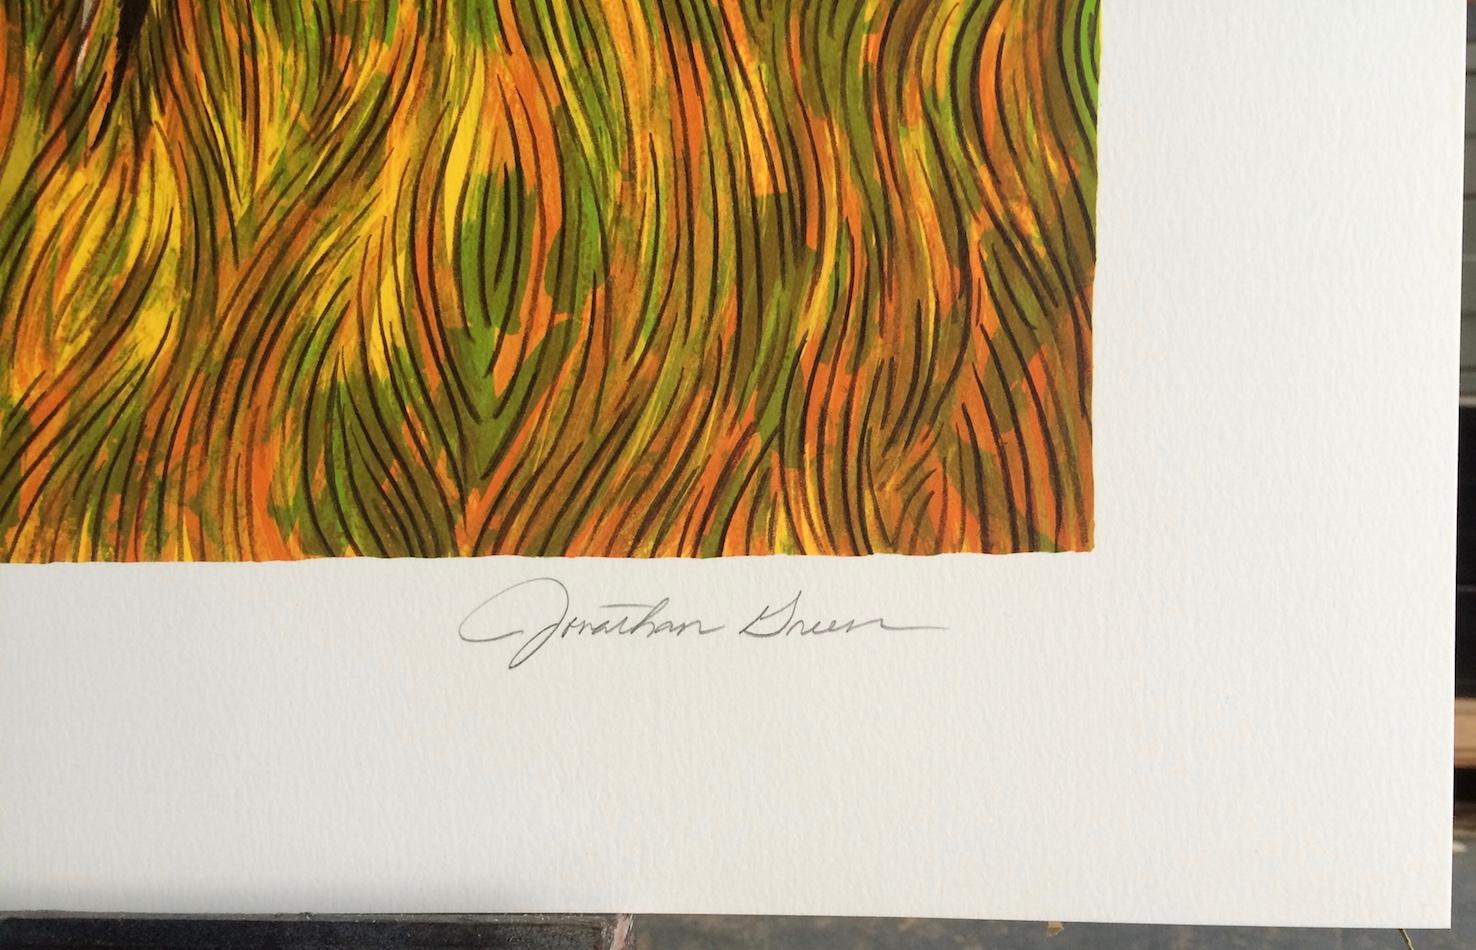 SWEETGRASS CARRIERS ist eine handgezeichnete Lithographie in limitierter Auflage (keine Fotoreproduktion oder ein Digitaldruck) des renommierten amerikanischen Künstlers JONATHAN GREEN, gedruckt in 17 Farben mit handlithographischen Techniken auf